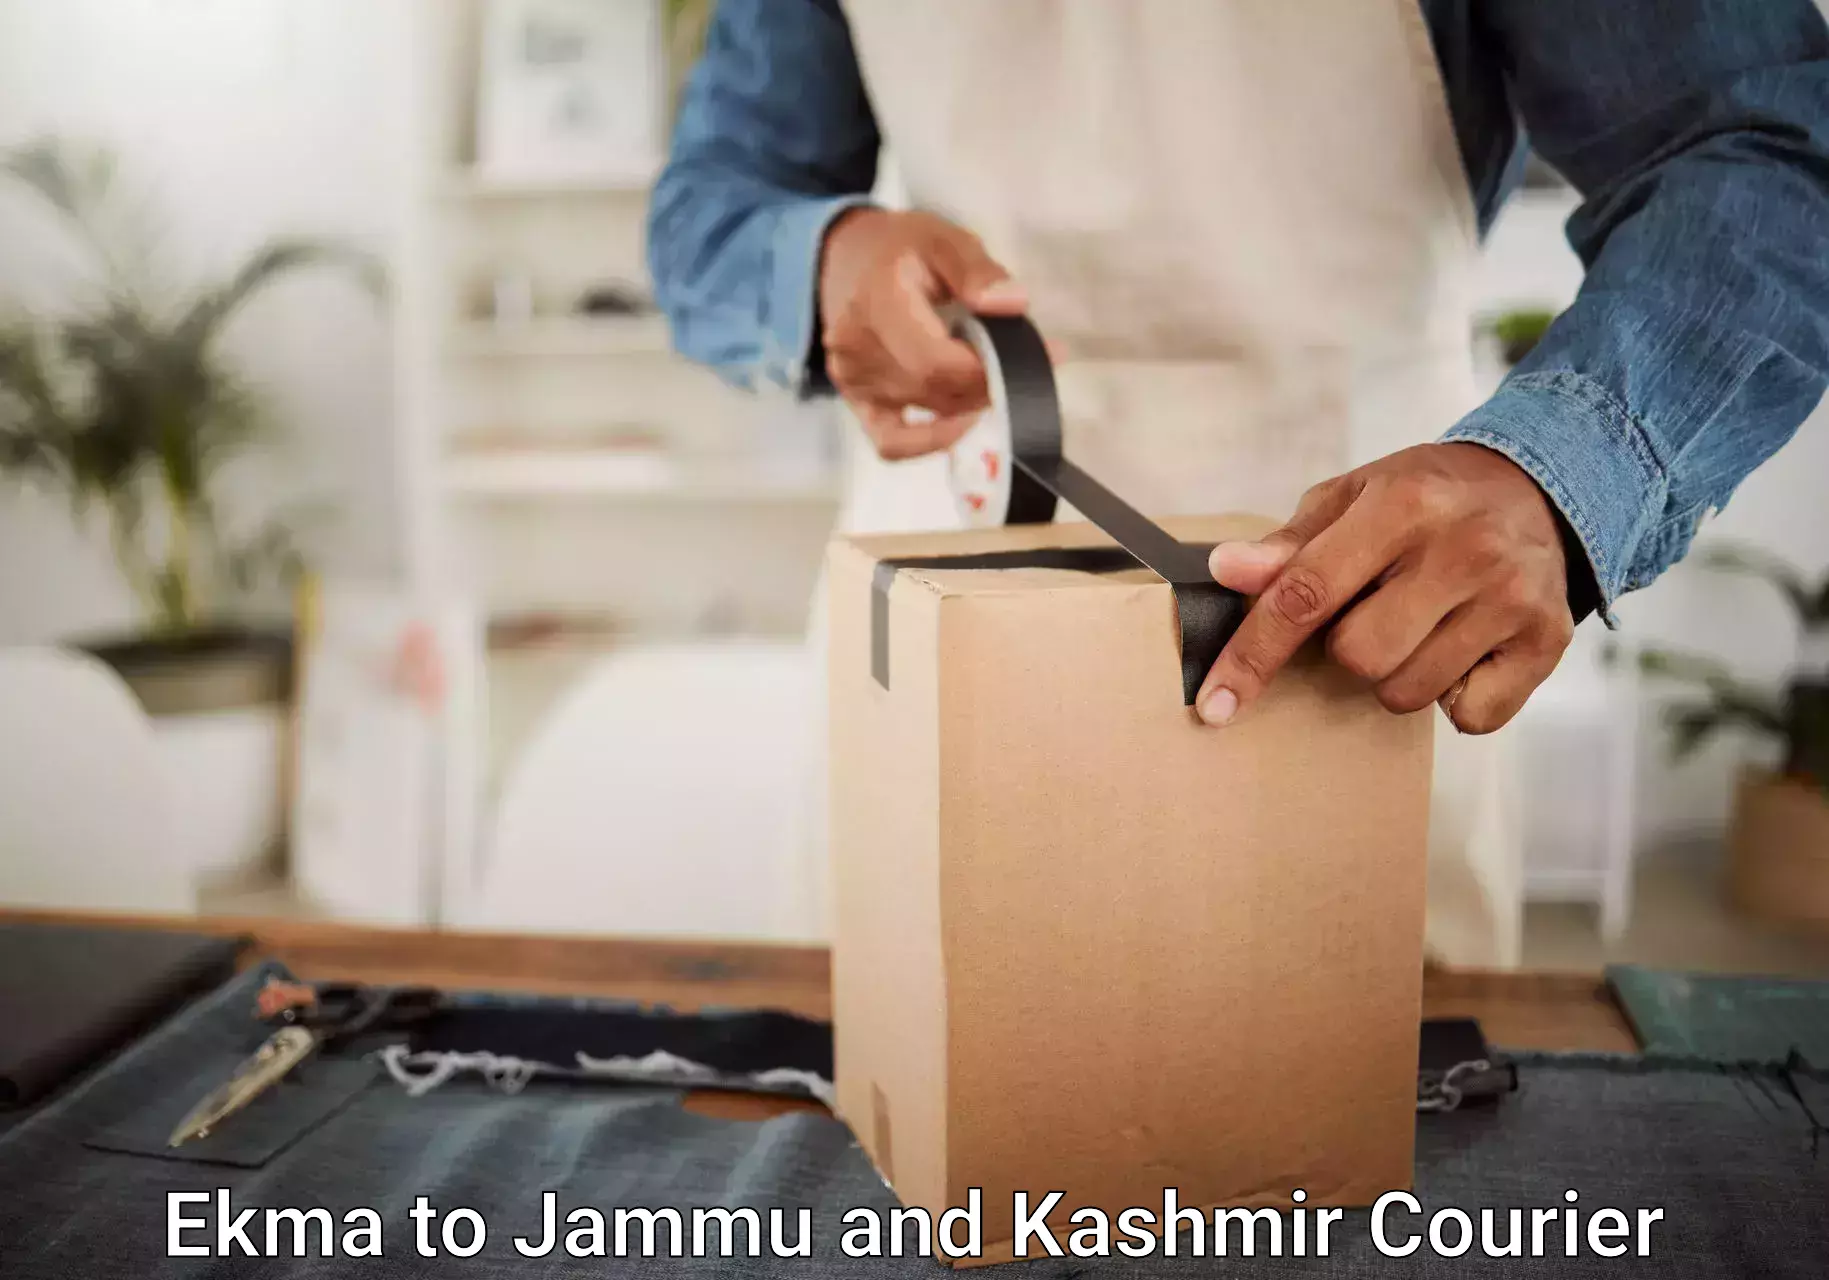 Baggage handling services Ekma to Jammu and Kashmir